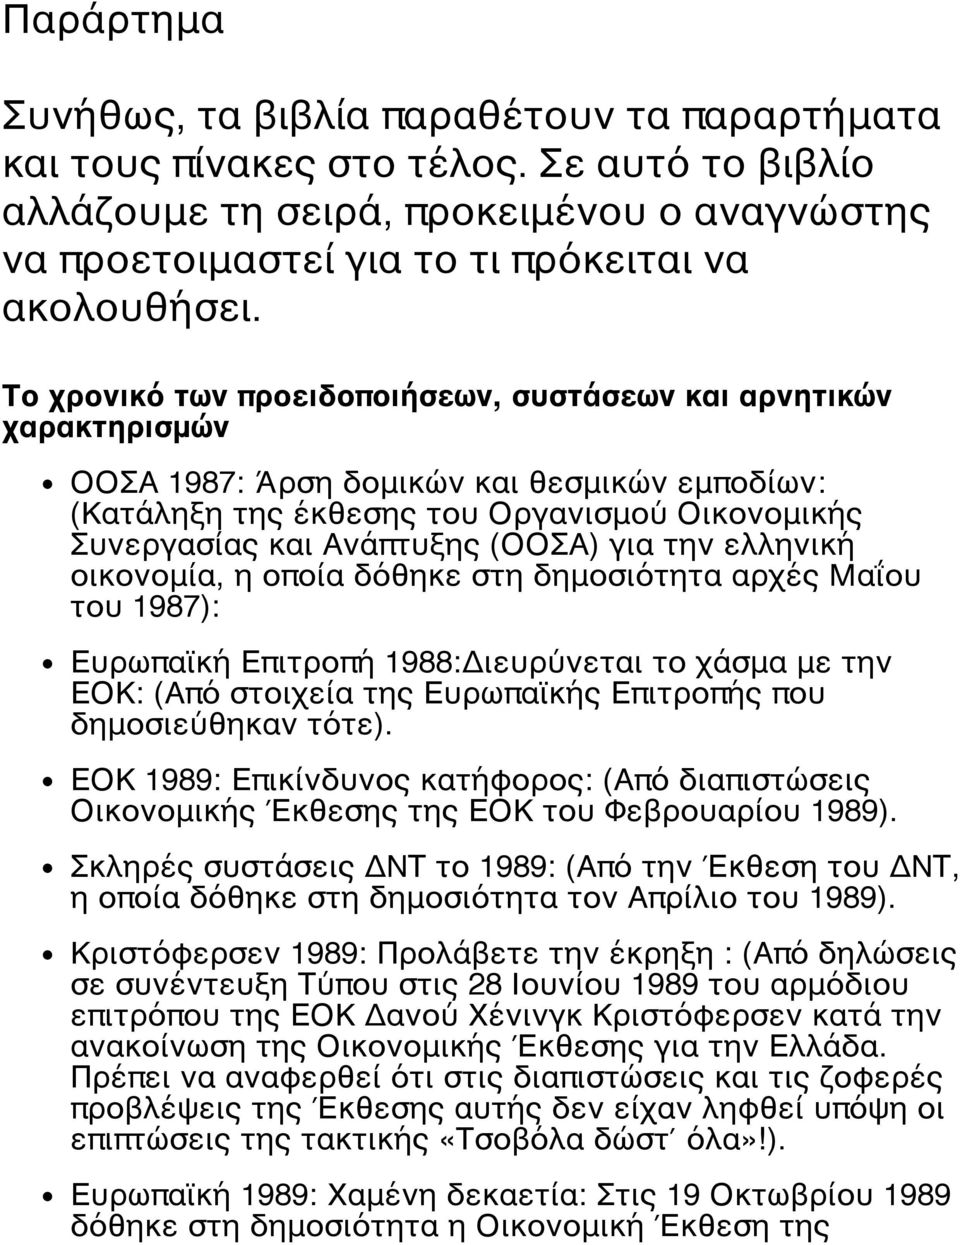 για την ελληνική οικονομία, η οποία δόθηκε στη δημοσιότητα αρχές Μαΐου του 1987): Ευρωπαϊκή Επιτροπή 1988:Διευρύνεται το χάσμα με την ΕΟΚ: (Από στοιχεία της Ευρωπαϊκής Επιτροπής που δημοσιεύθηκαν